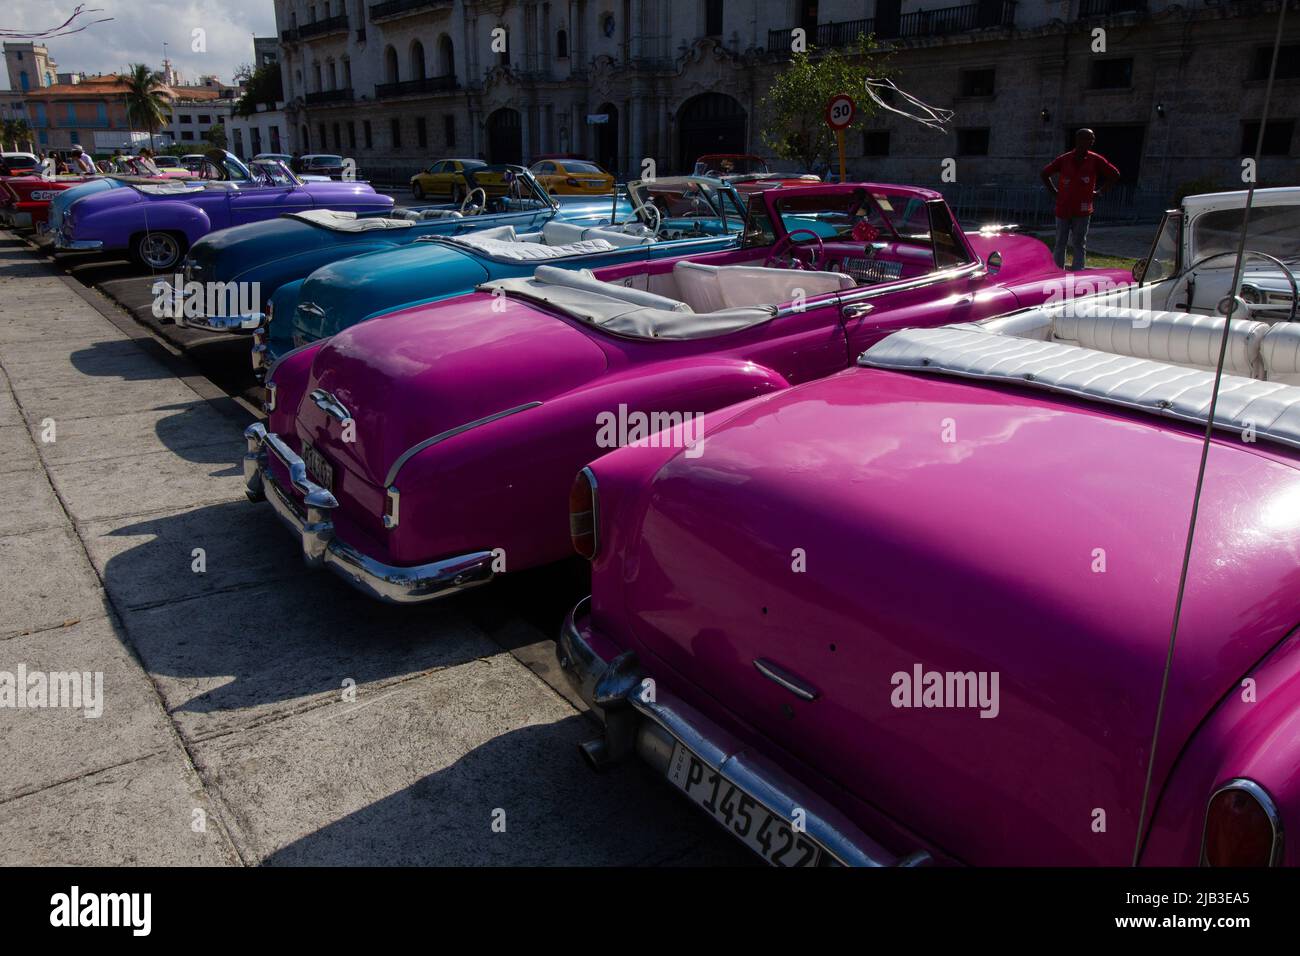 Voitures classiques et vintage aux couleurs vives à la Havane Cuba Banque D'Images